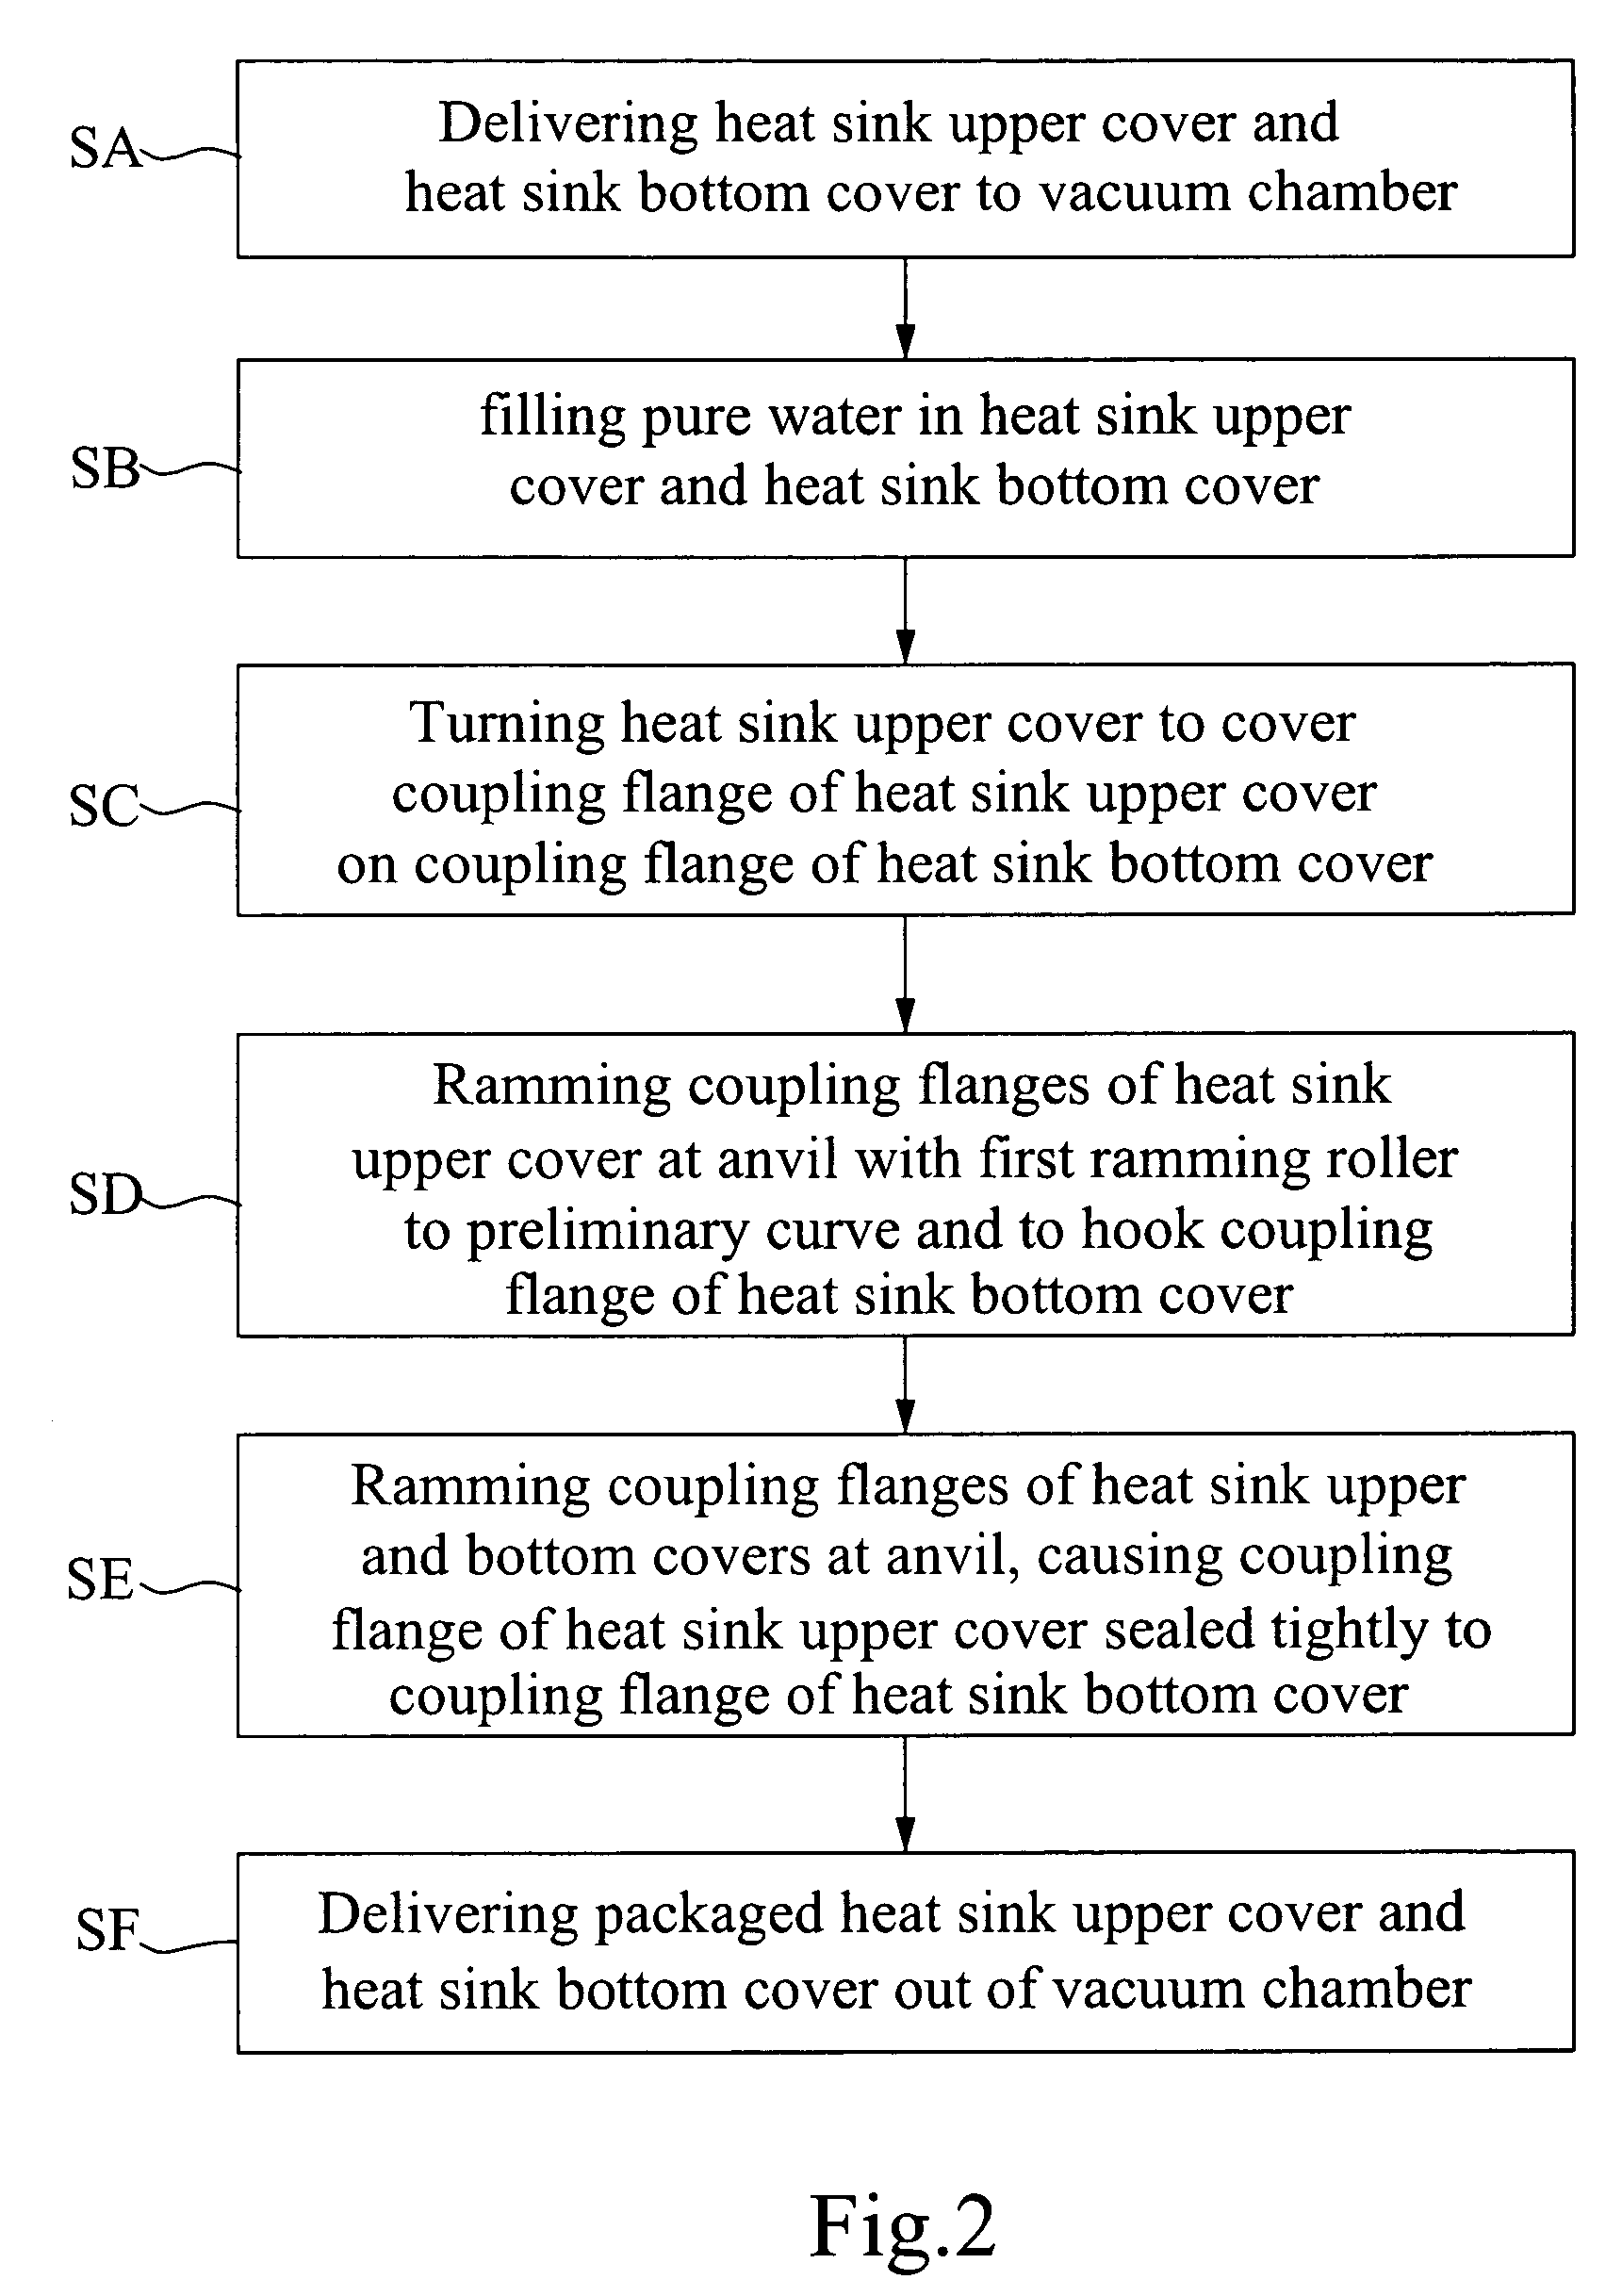 Heat sink vacuum packaging procedure